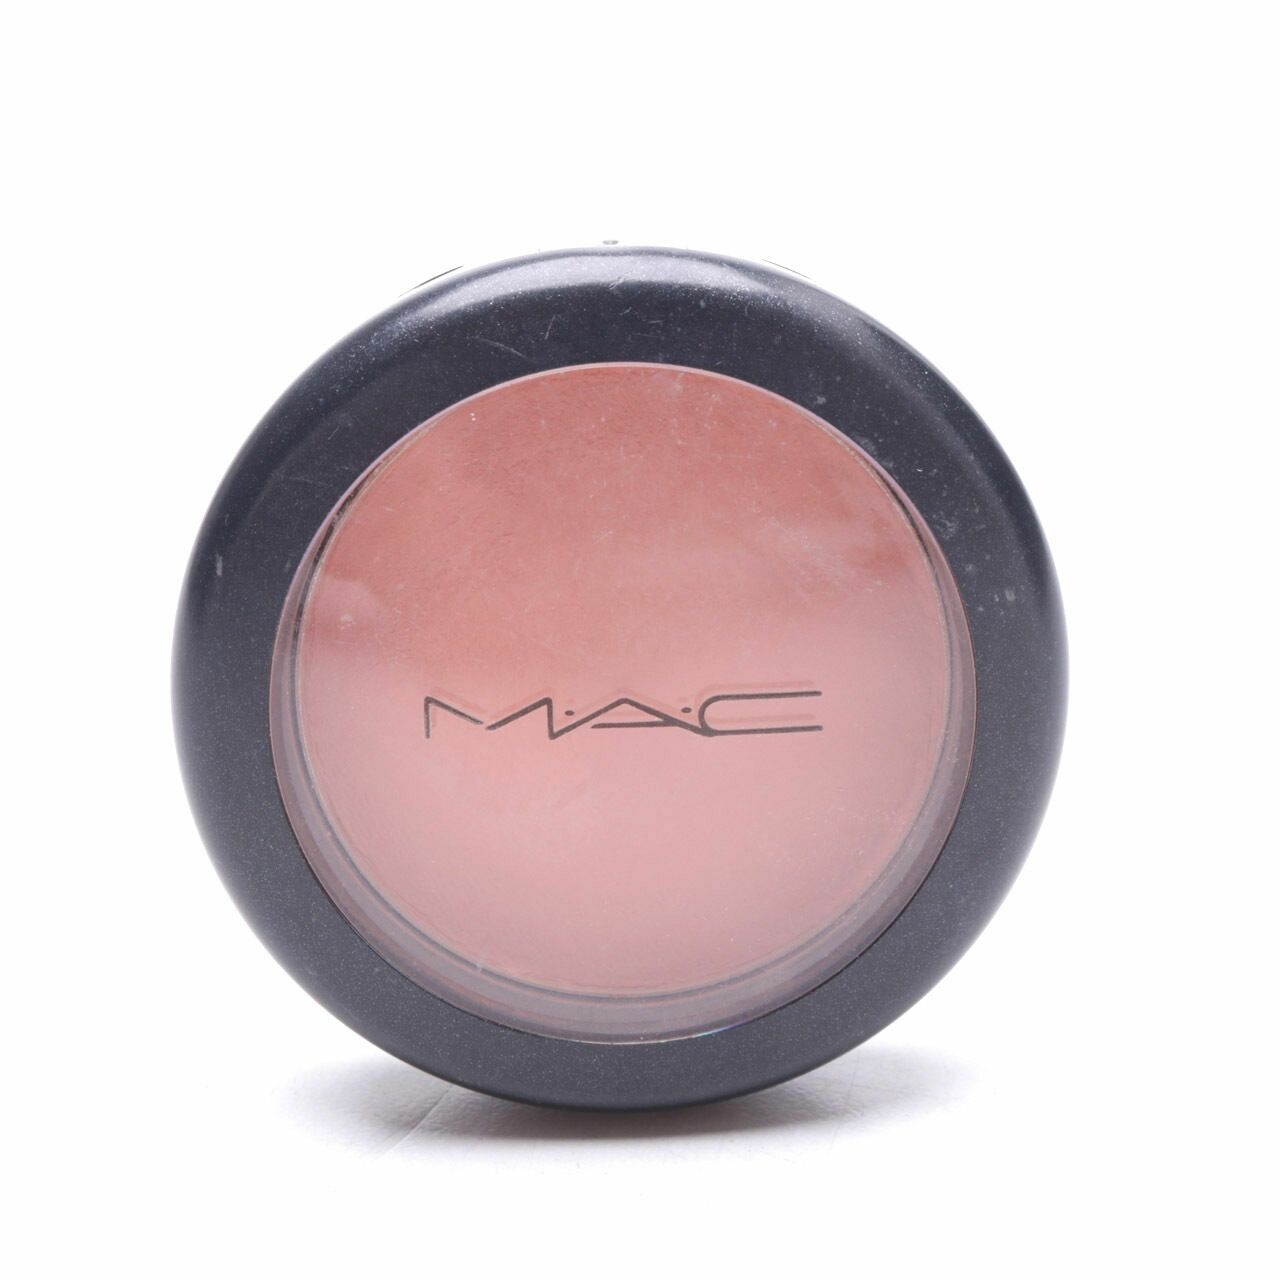 MAC Melba Matte Powder Blush Faces